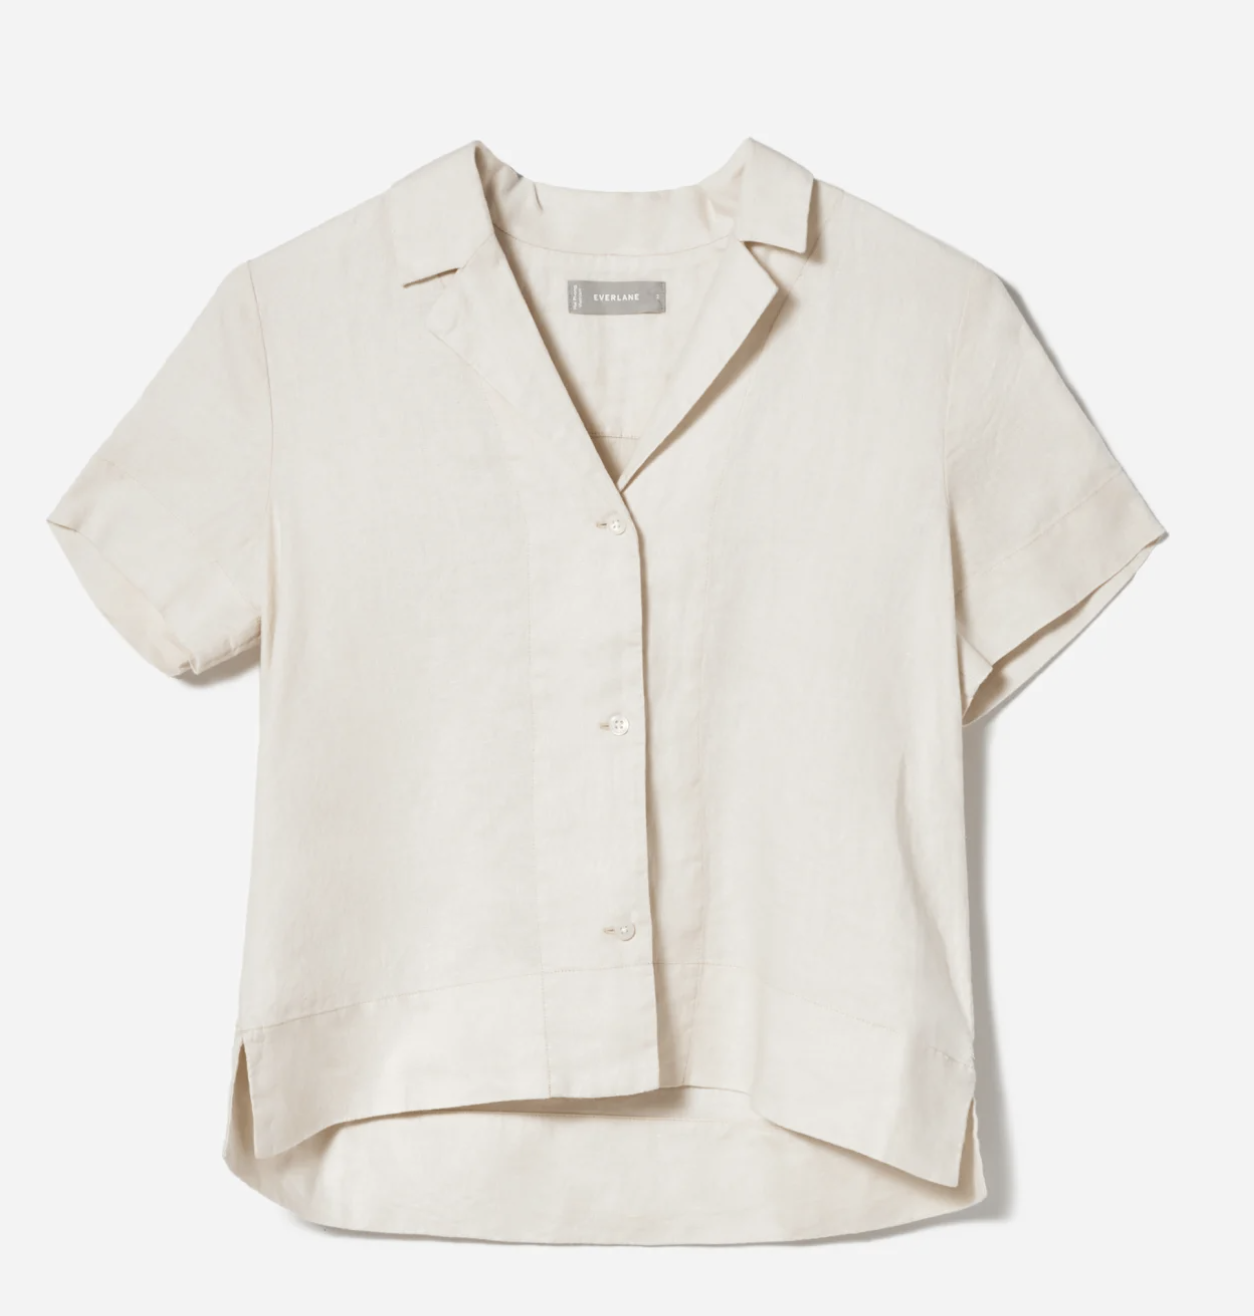 EVERLANE: The Linen Short-Sleeve Notch Shirt